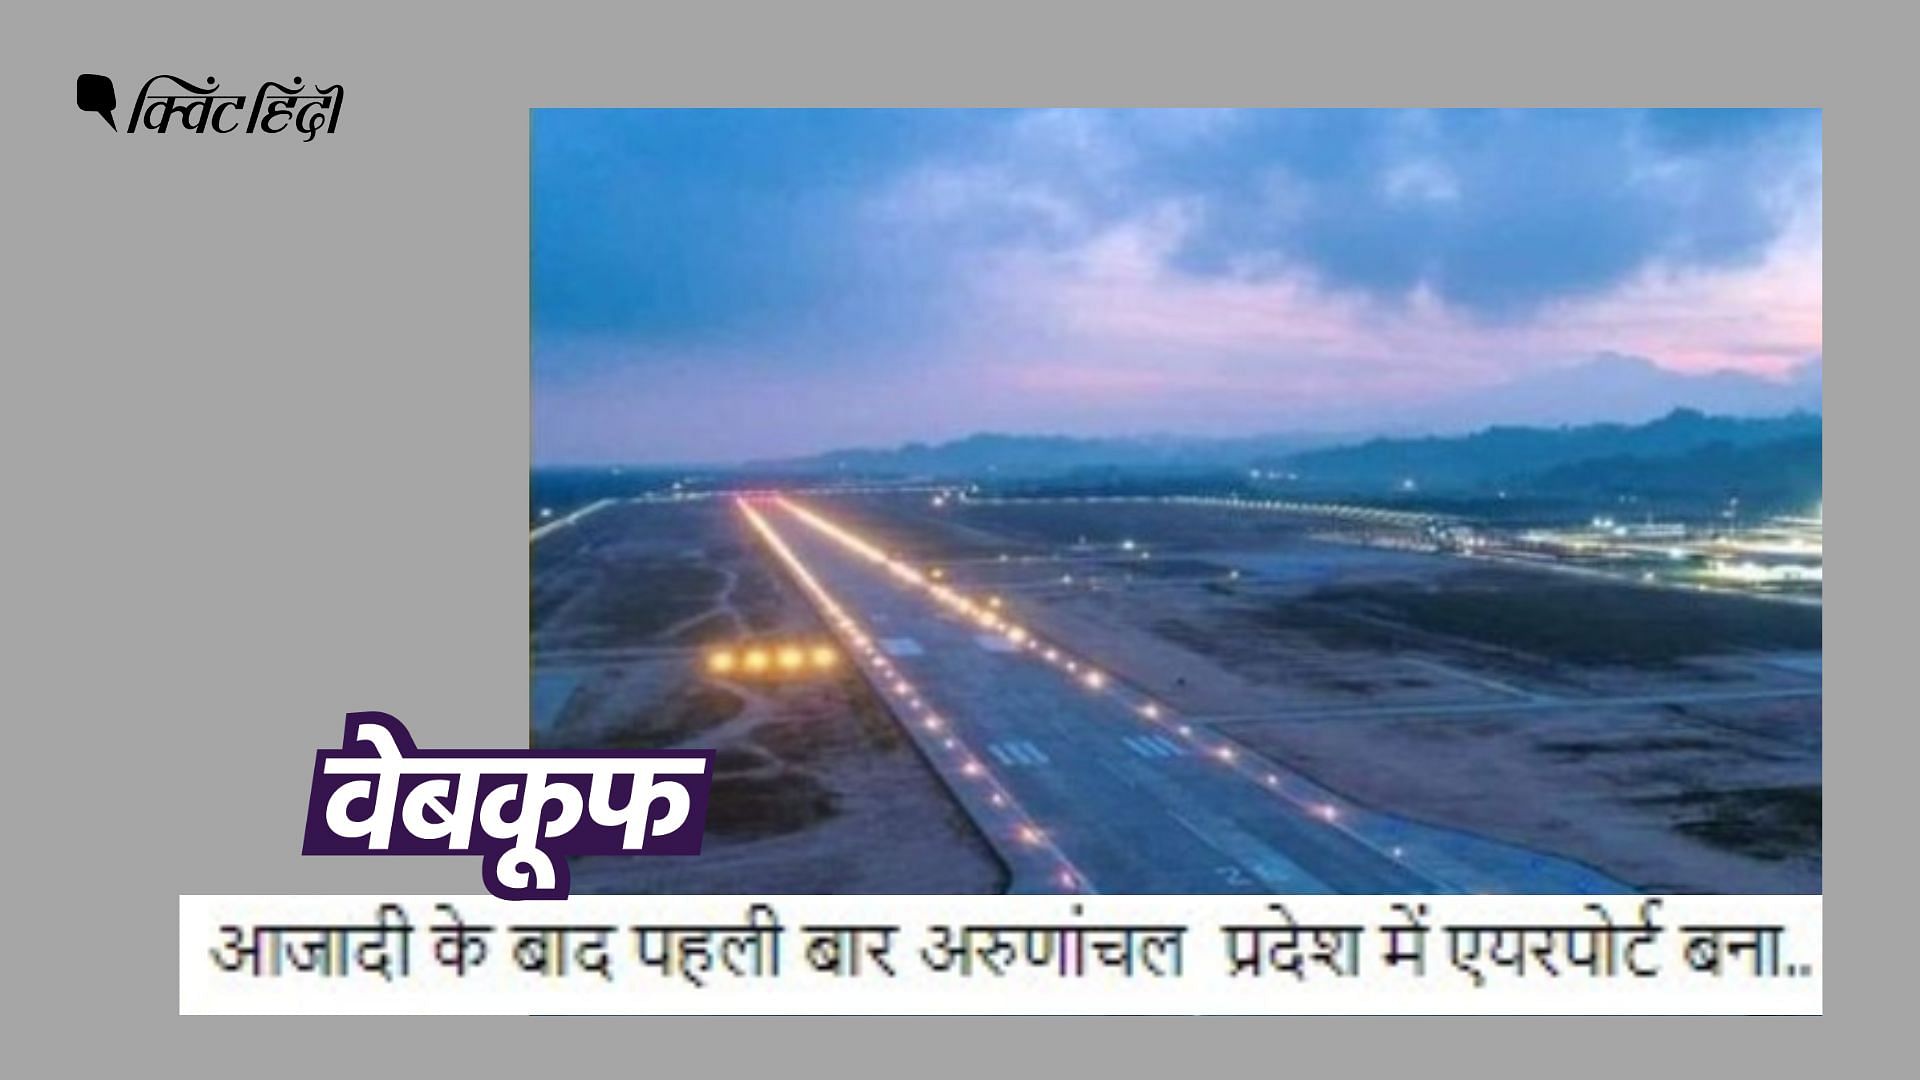 <div class="paragraphs"><p>Arunachal Pradesh में डोनी पोलो एयरपोर्ट बनने से पहले पासीघाट, जीरो और तेजू नाम के एयरपोर्ट थे.</p></div>